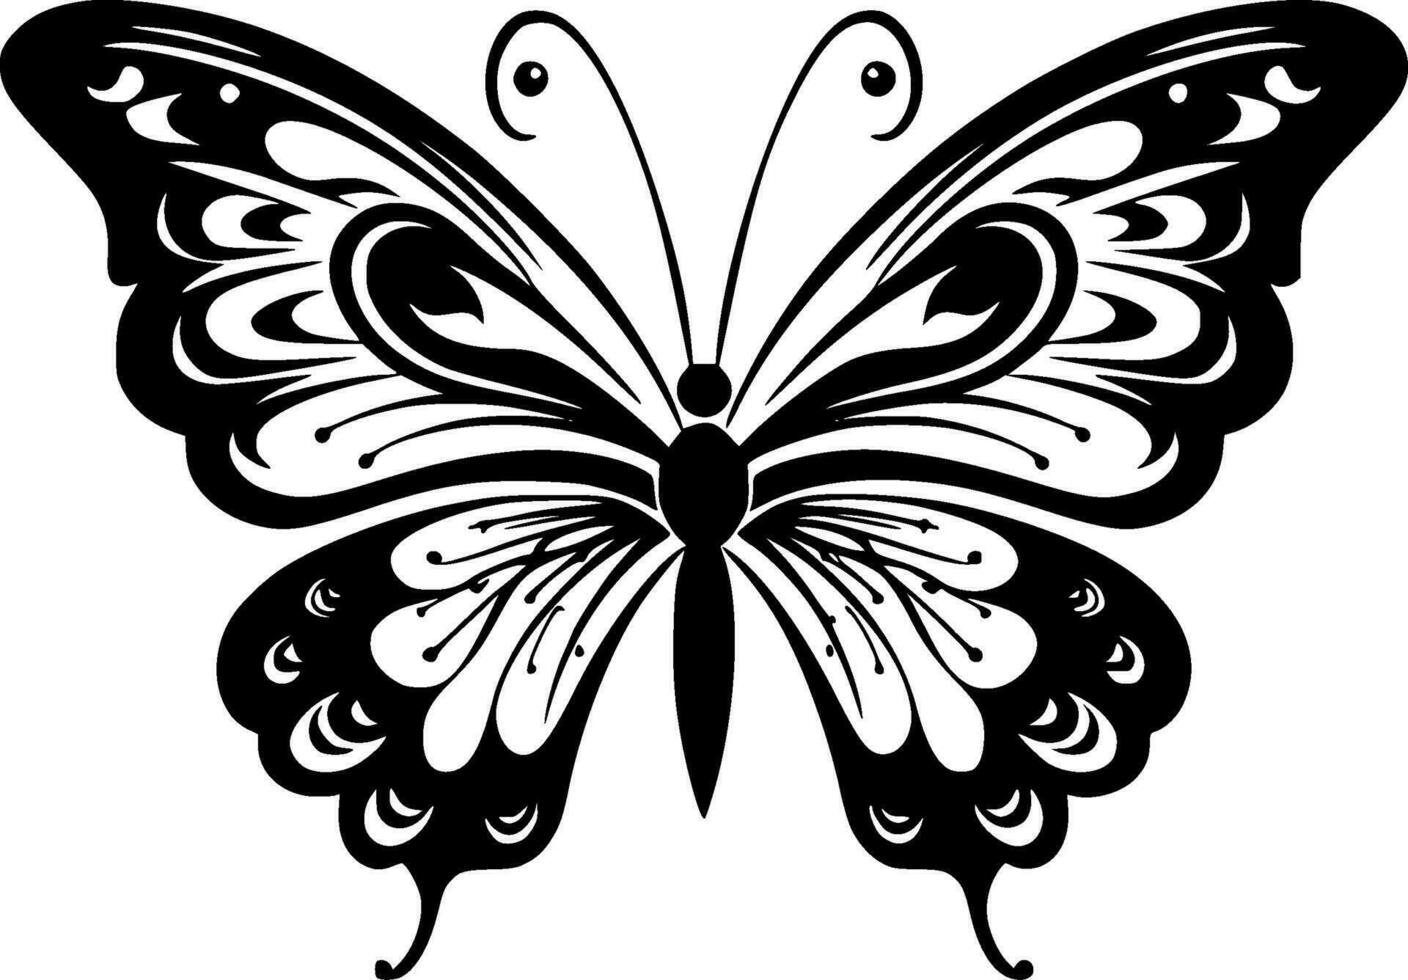 fjäril - minimalistisk och platt logotyp - vektor illustration